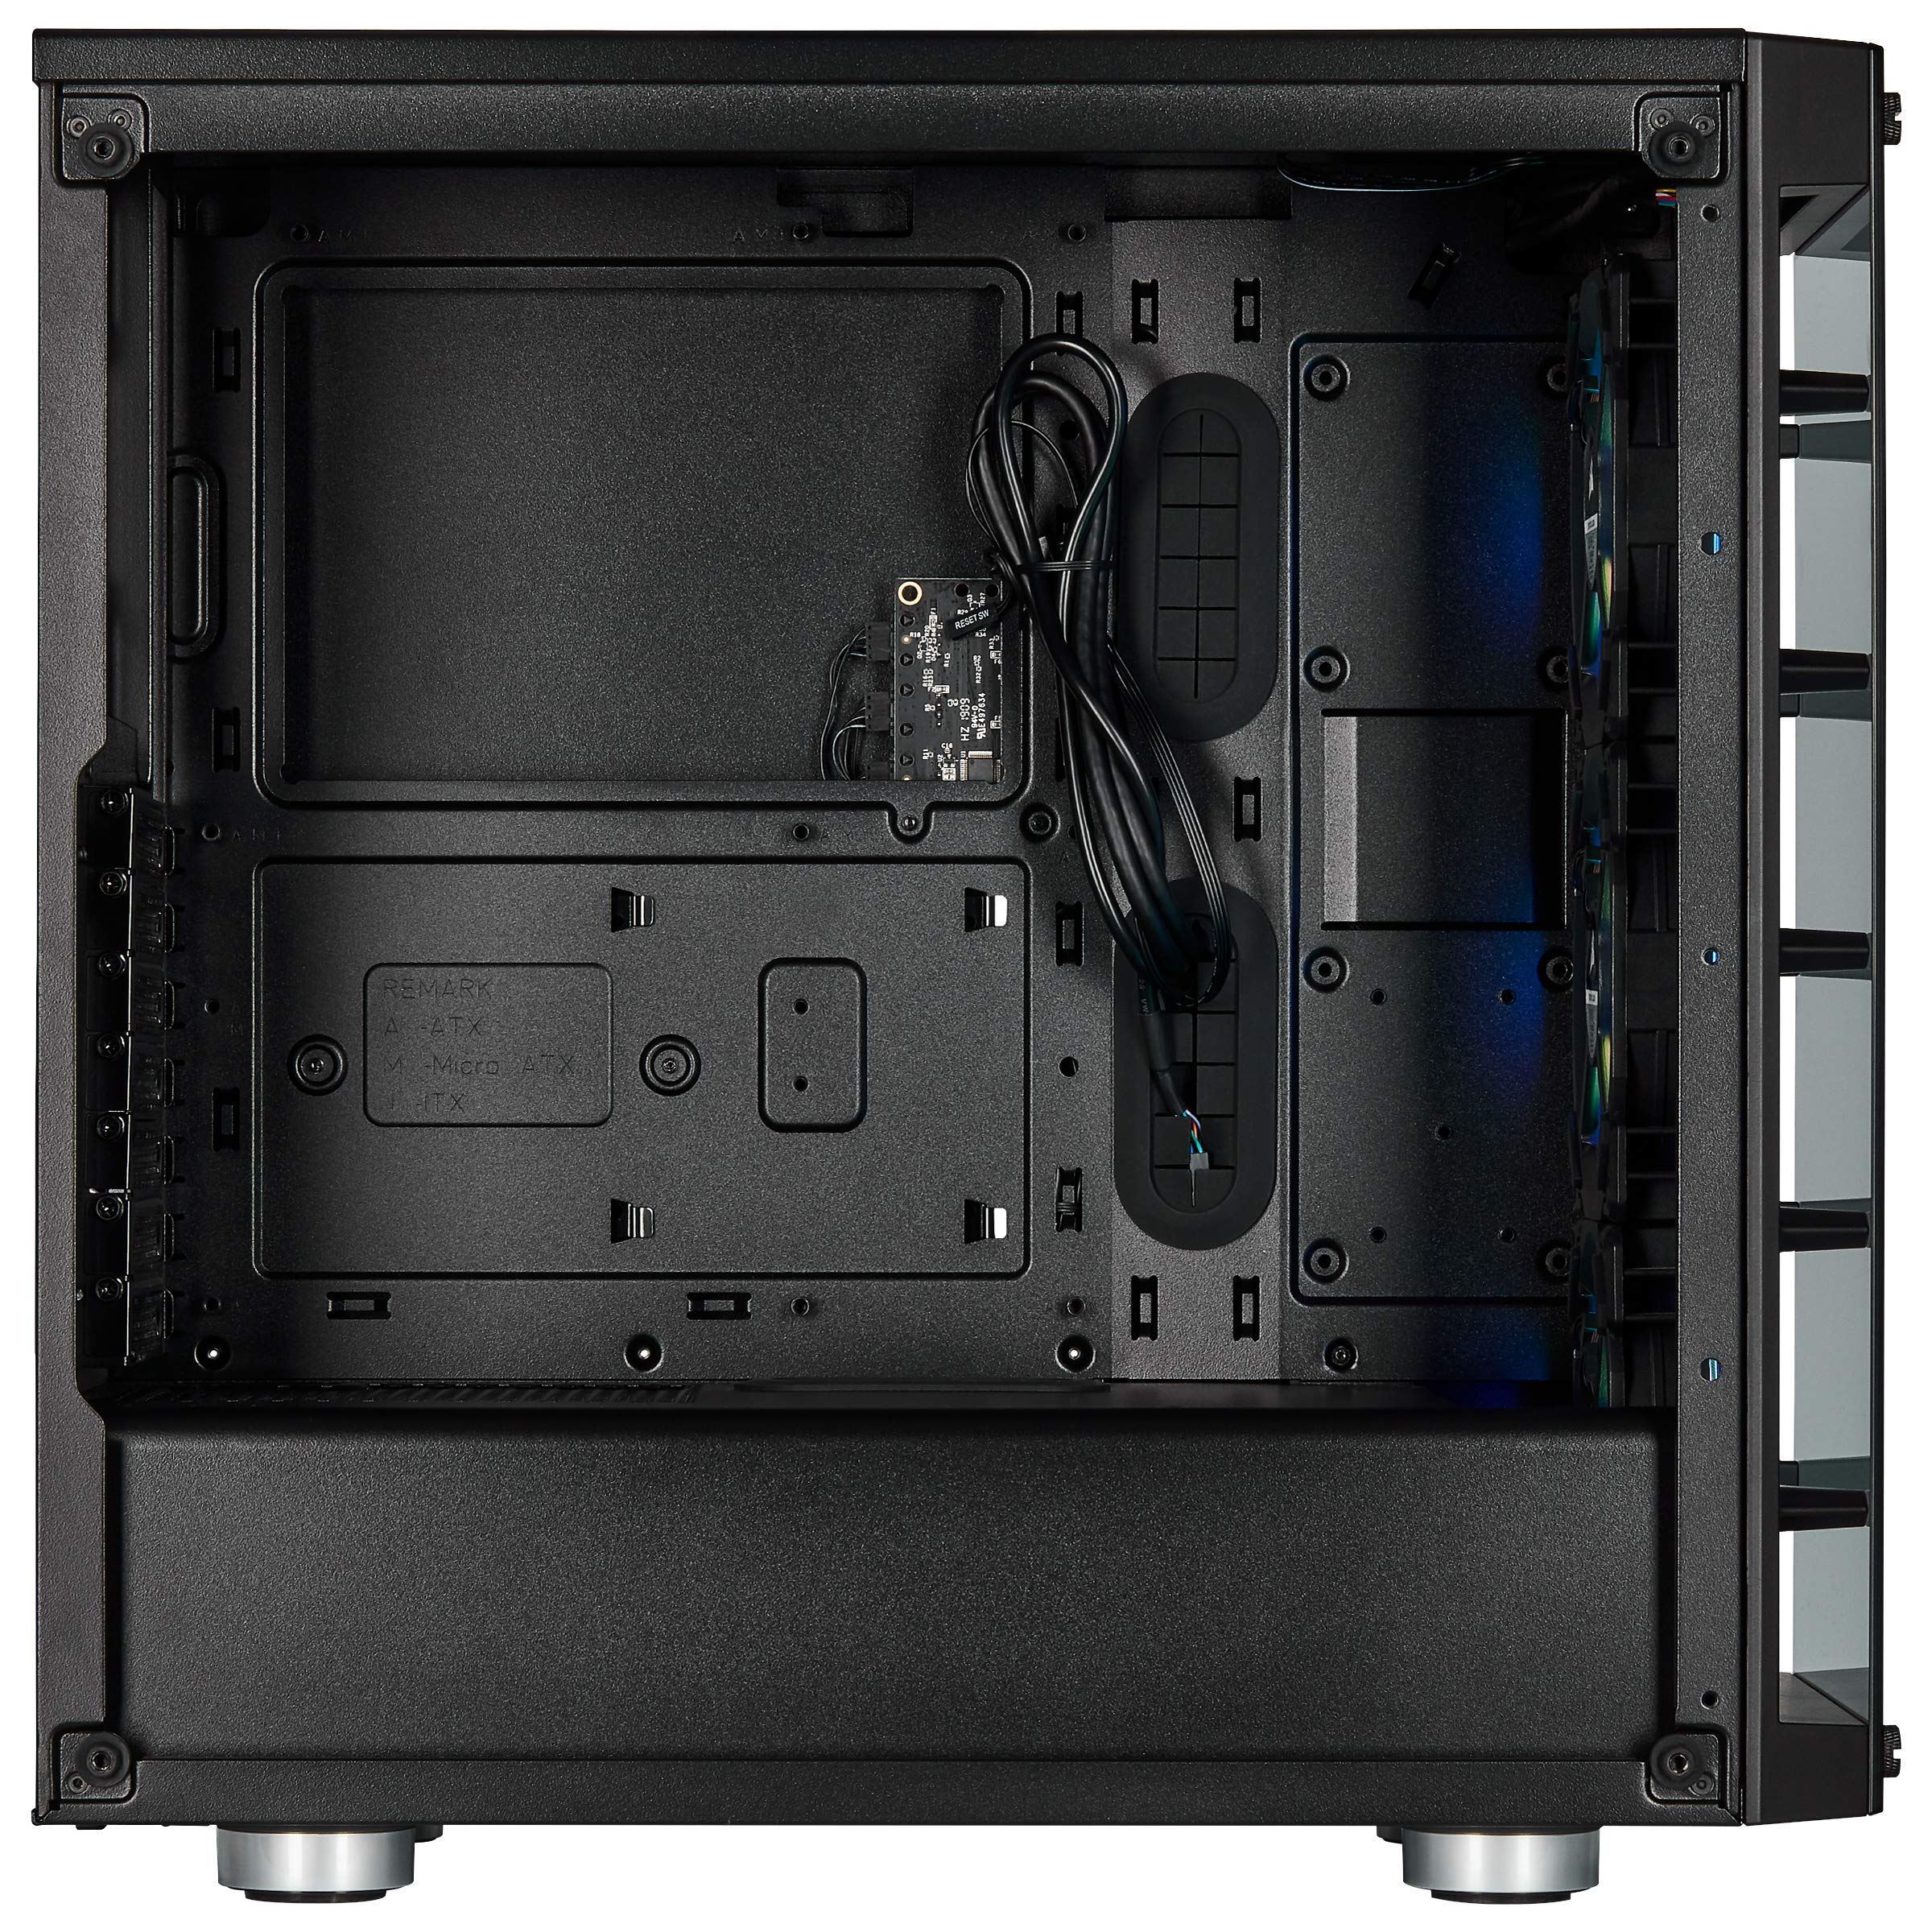 Corsair iCUE 465X RGB Mid-Tower ATX Smartes Gehäuse (Seiten und Frontscheibe aus gehärtetem Glas, 3 integrierte LL120 RGB Lüfter, vielseitige Kühloptionen) schwarz